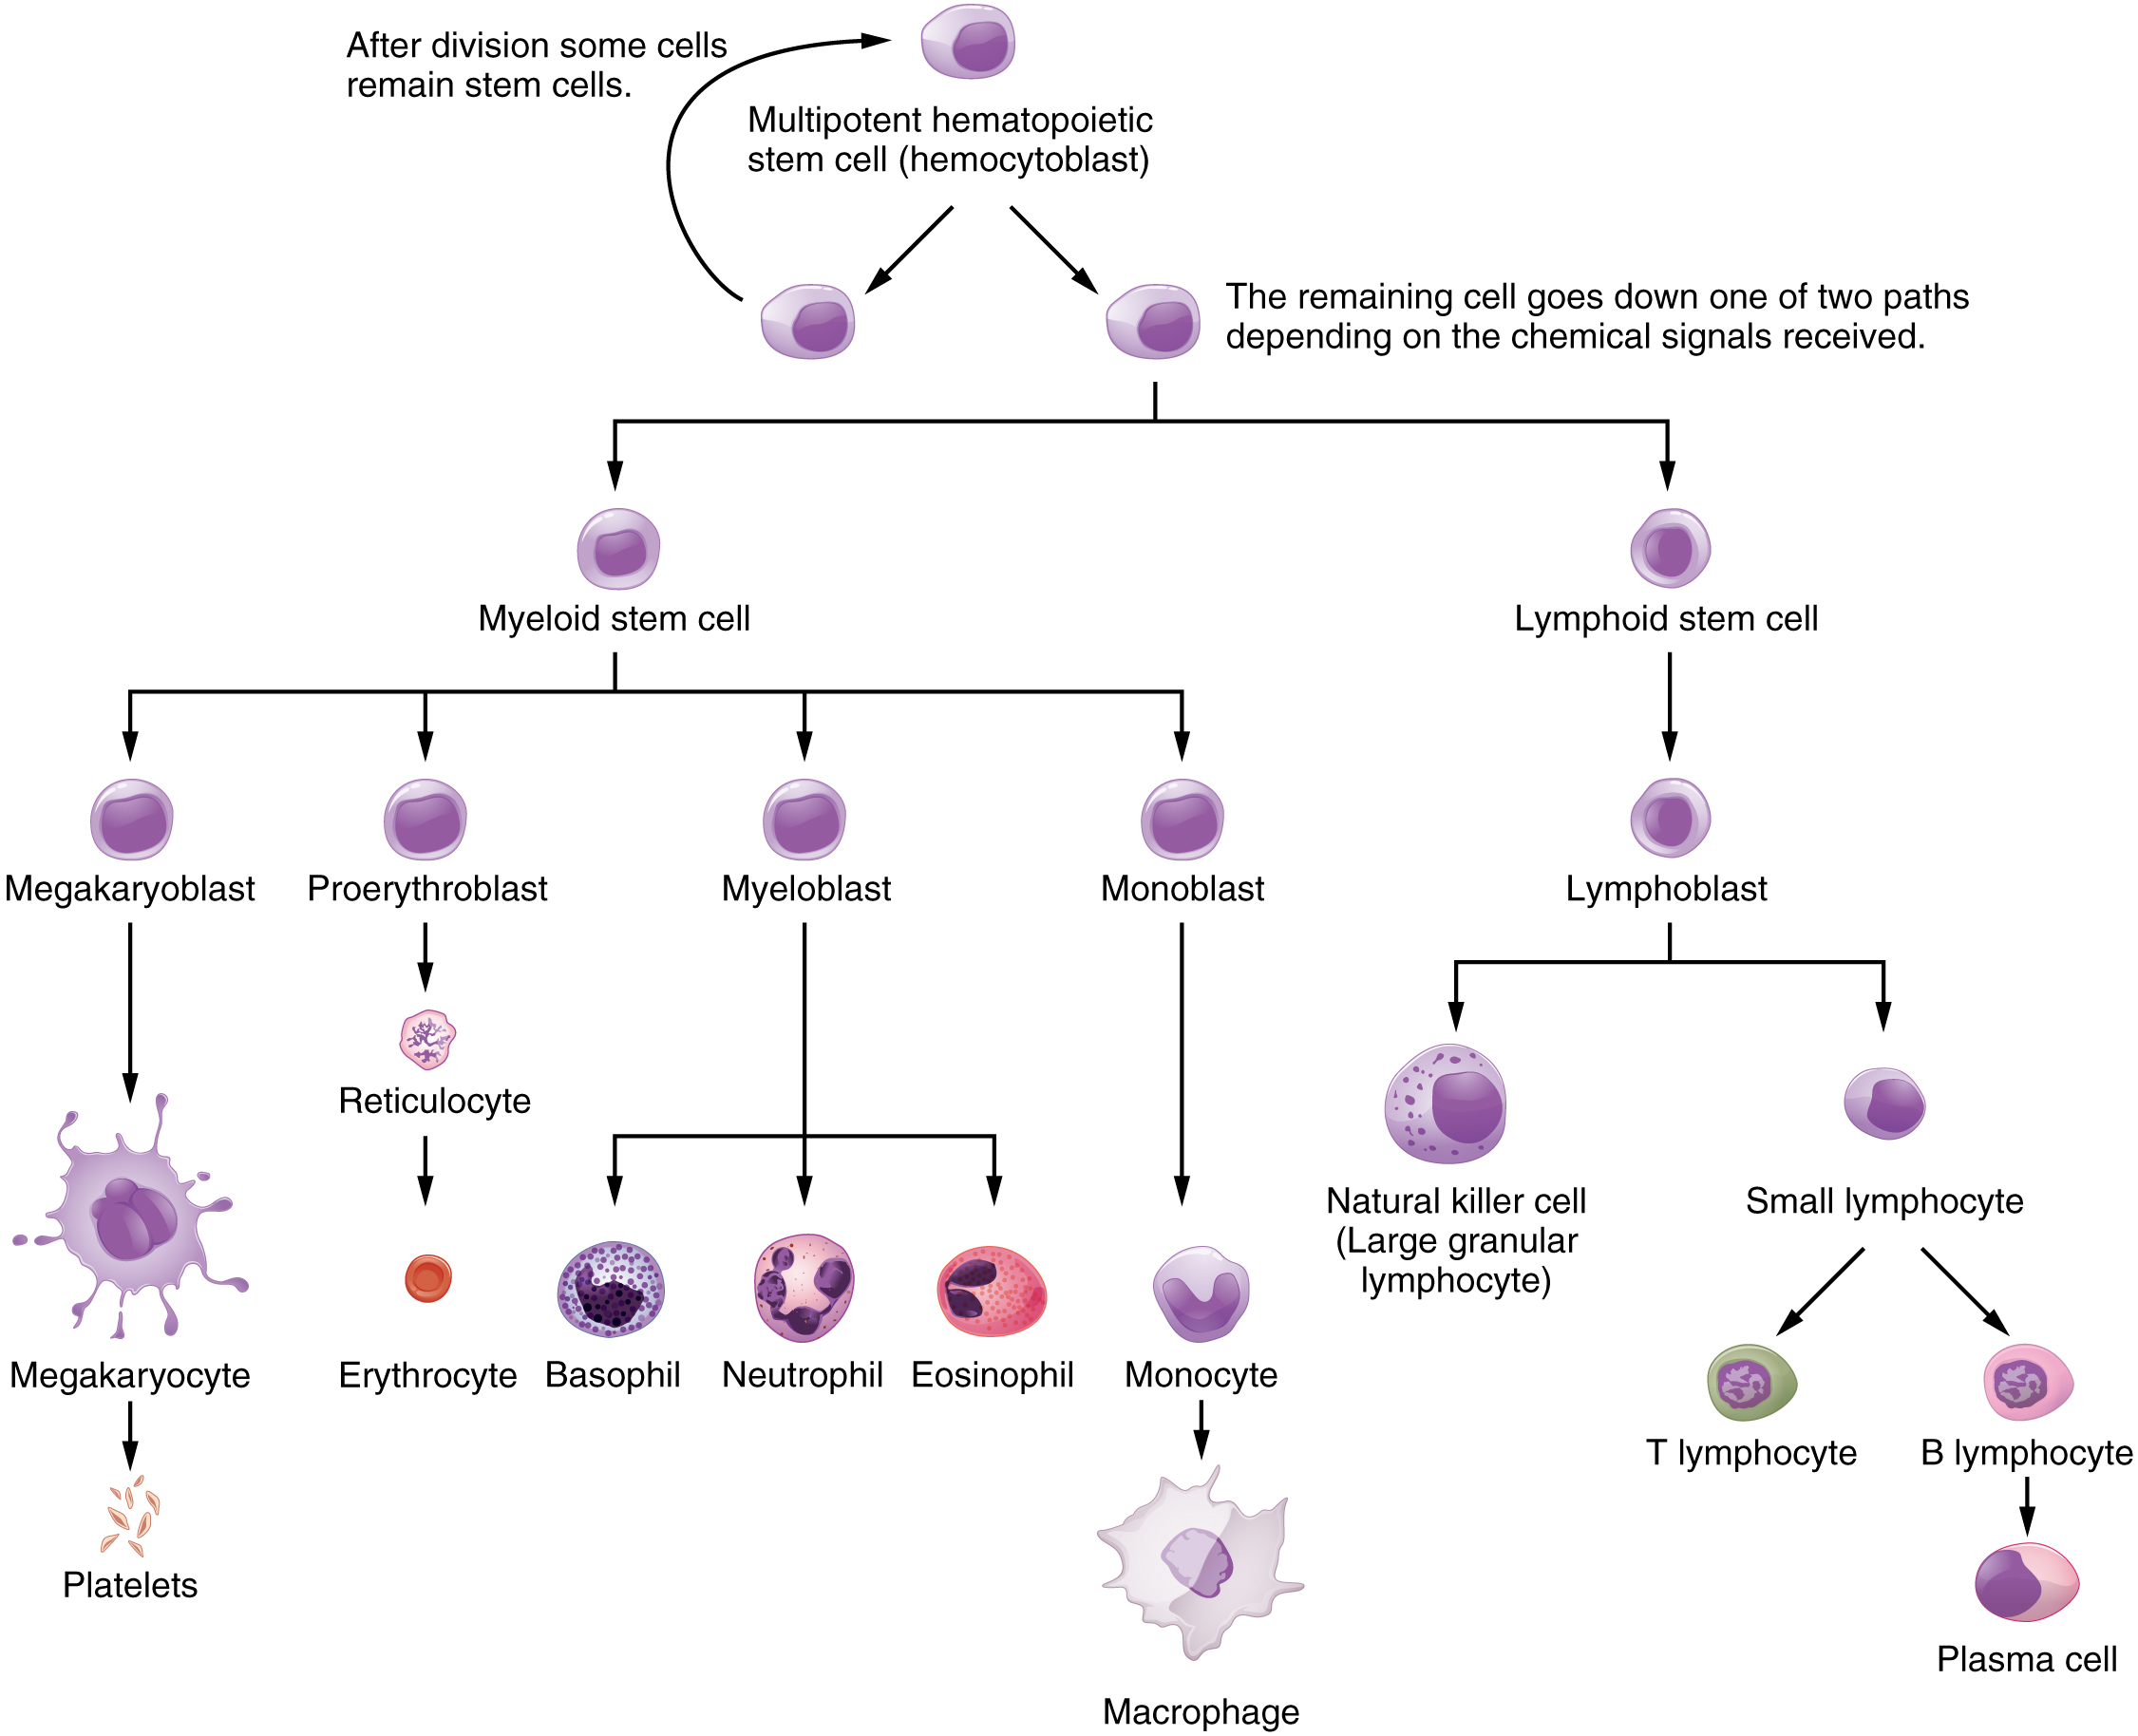 Este fluxograma mostra as etapas nas quais uma célula-tronco hematopoiética multipotencial se diferencia nos diferentes tipos de células no sangue.